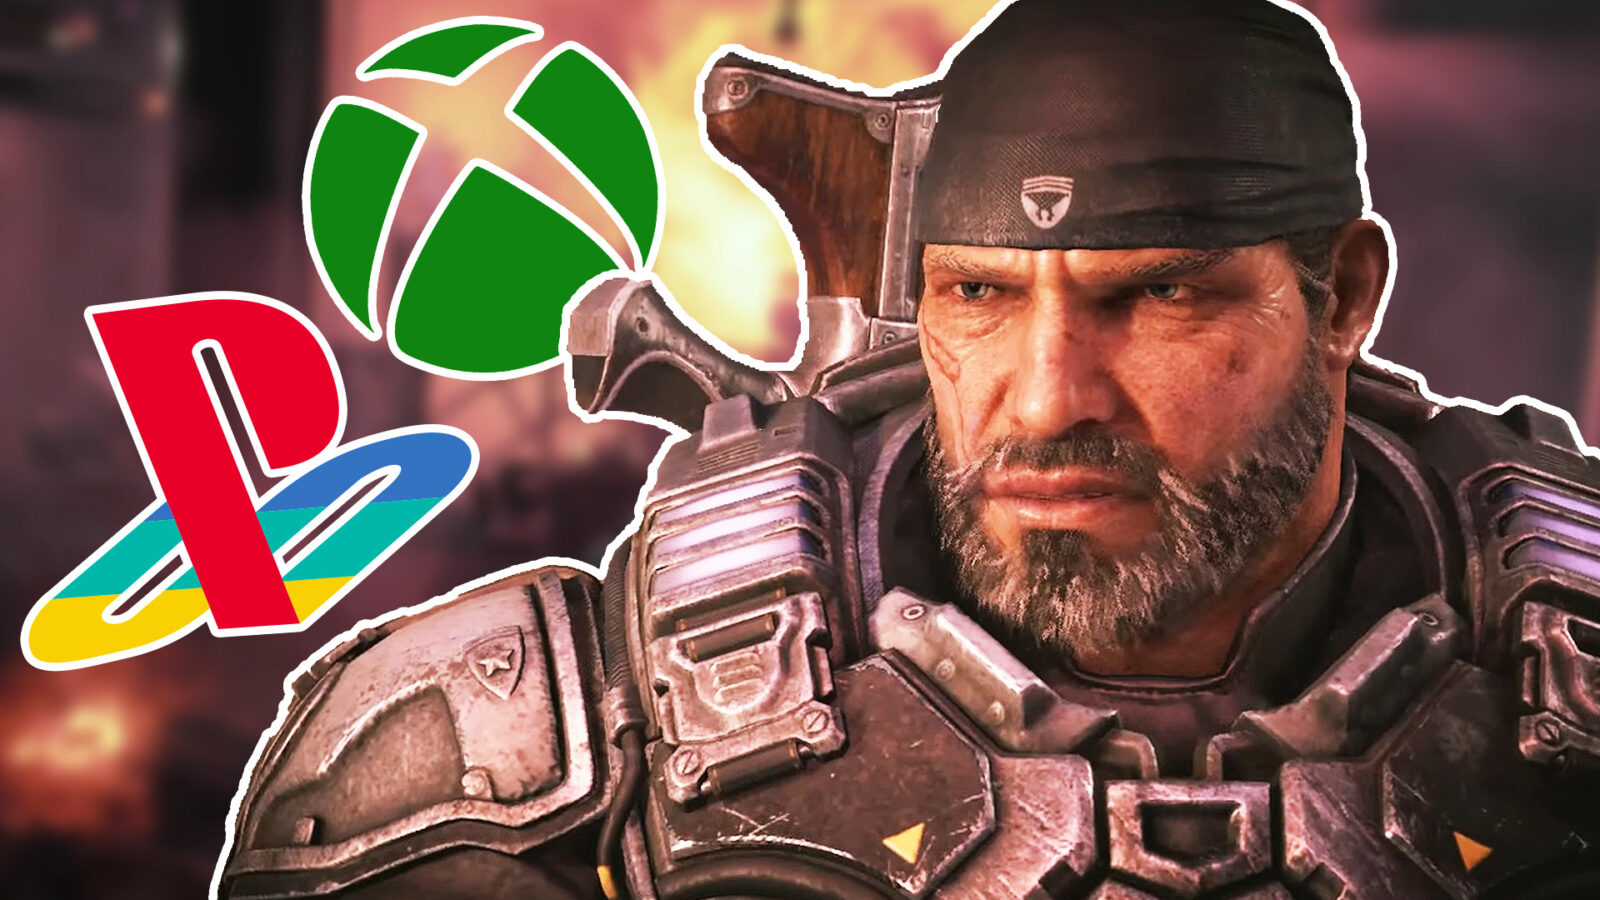 Xbox の PS5 向け独占アイテムには、衝撃的なことに Gears of War が含まれる可能性があります